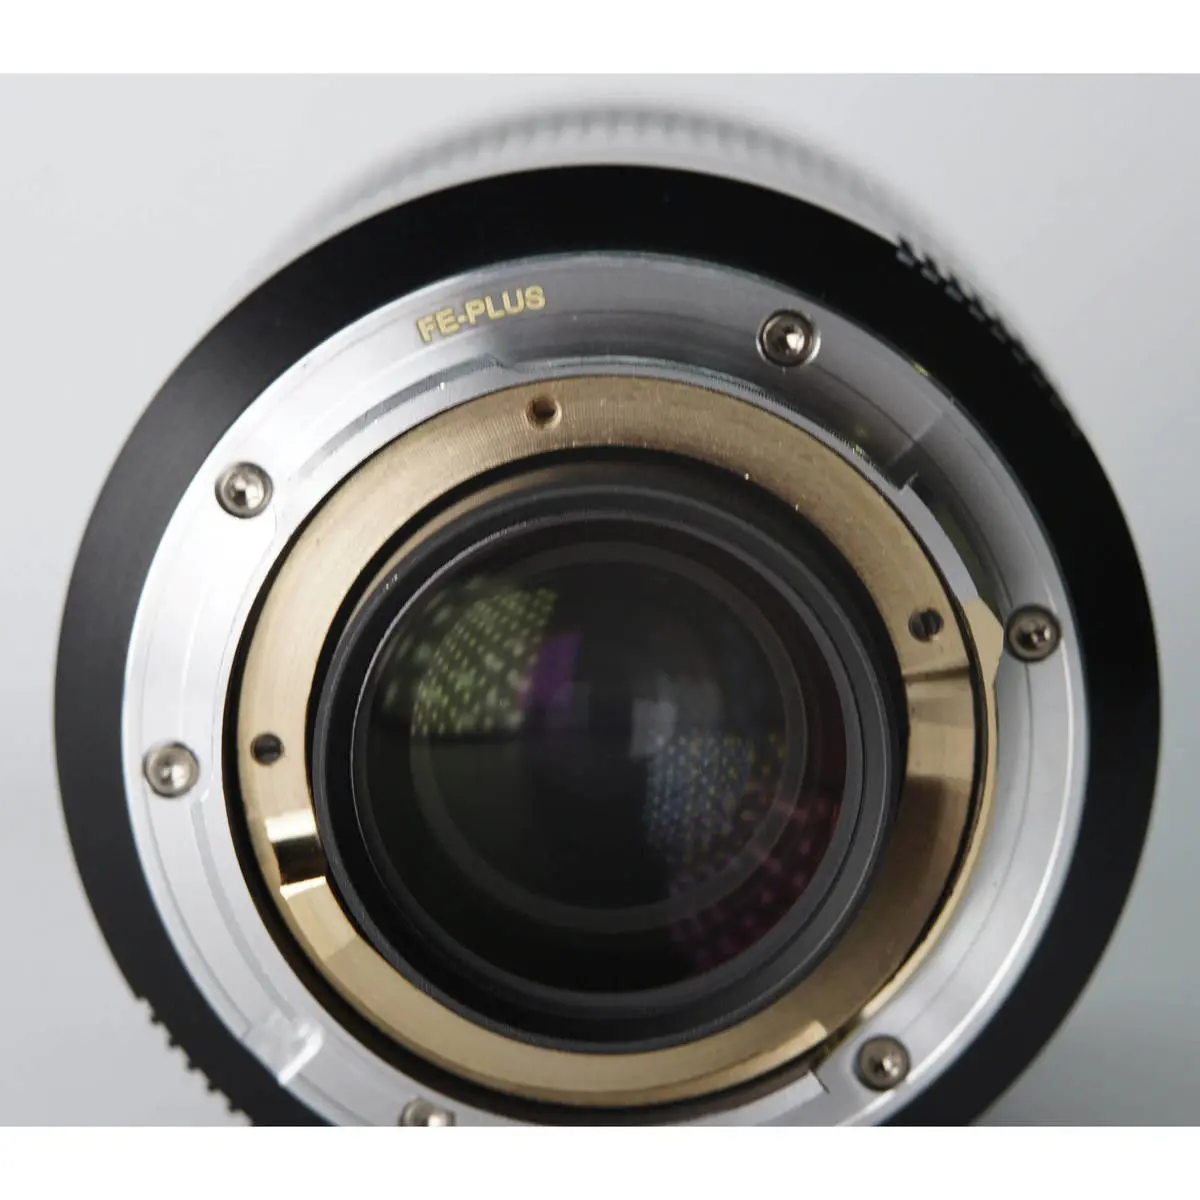 3. 7Artisans 28mm F1.4 (Leica M) FE+  Black (A001B-E) Lens